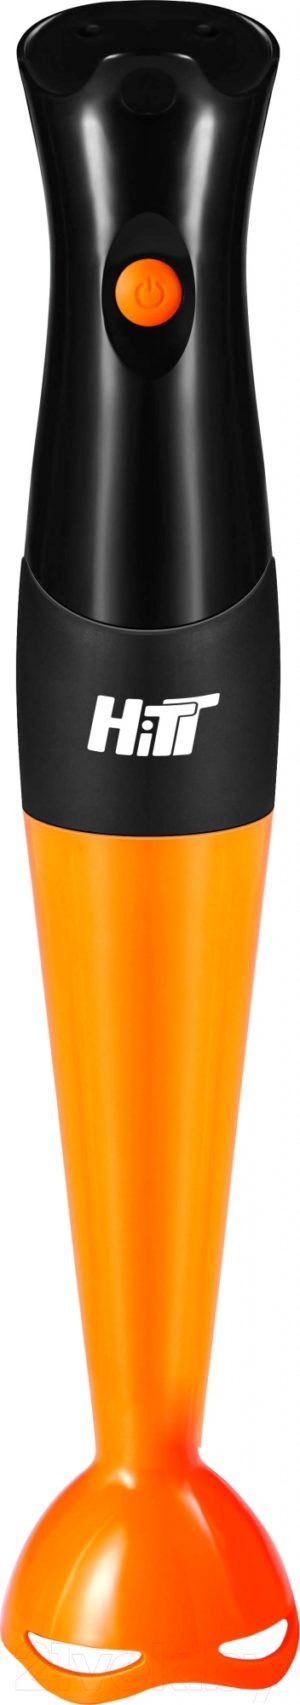 Миксер Hitt HT-5401